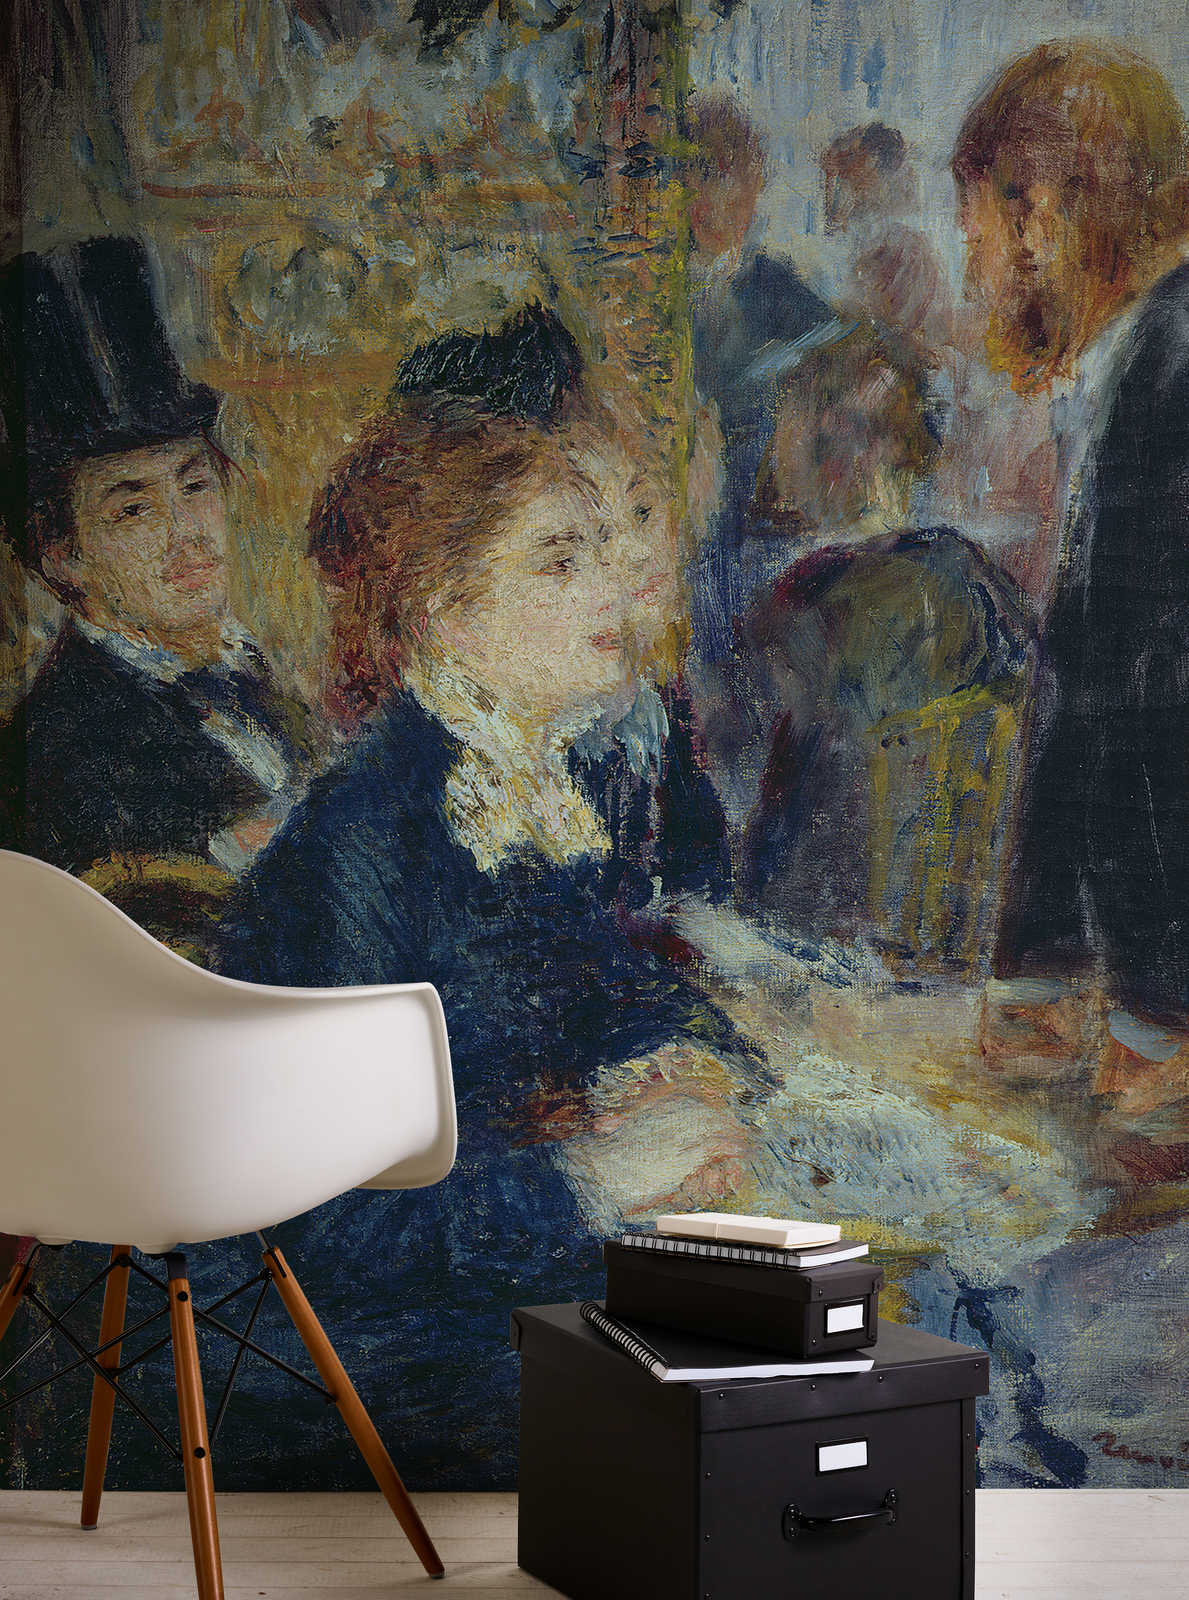             Fototapete "Im Kaffeehaus" von Pierre Auguste Renoir
        